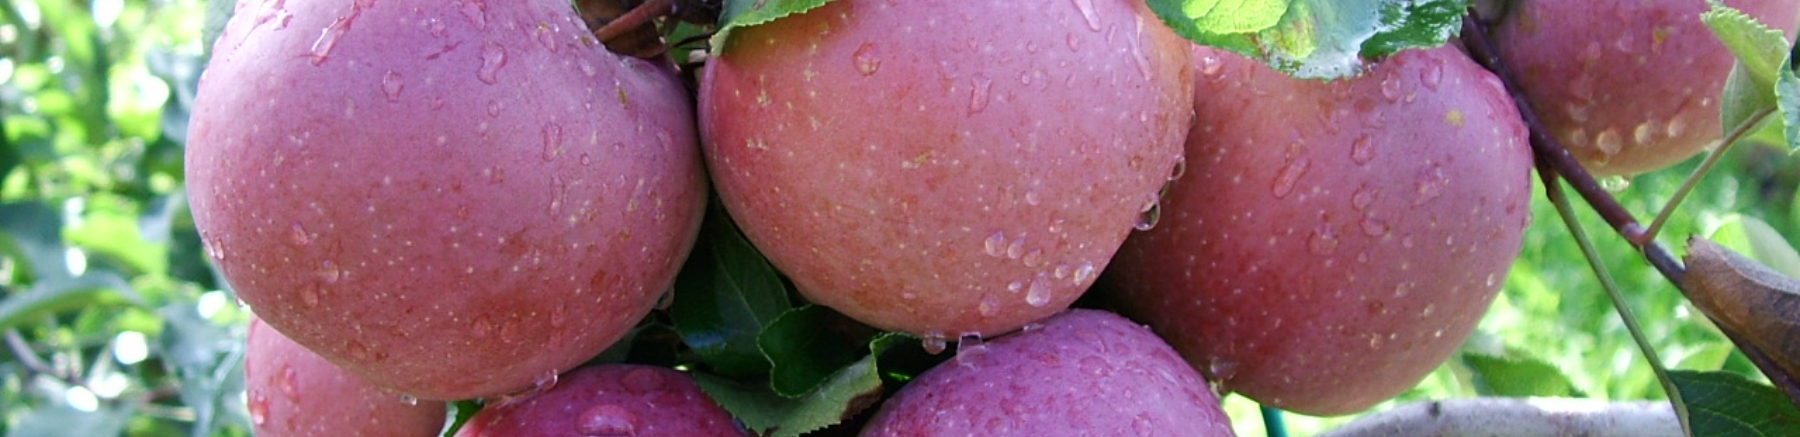 7 melo - Cimice asiatica e altre avversità del periodo: Immagine Header